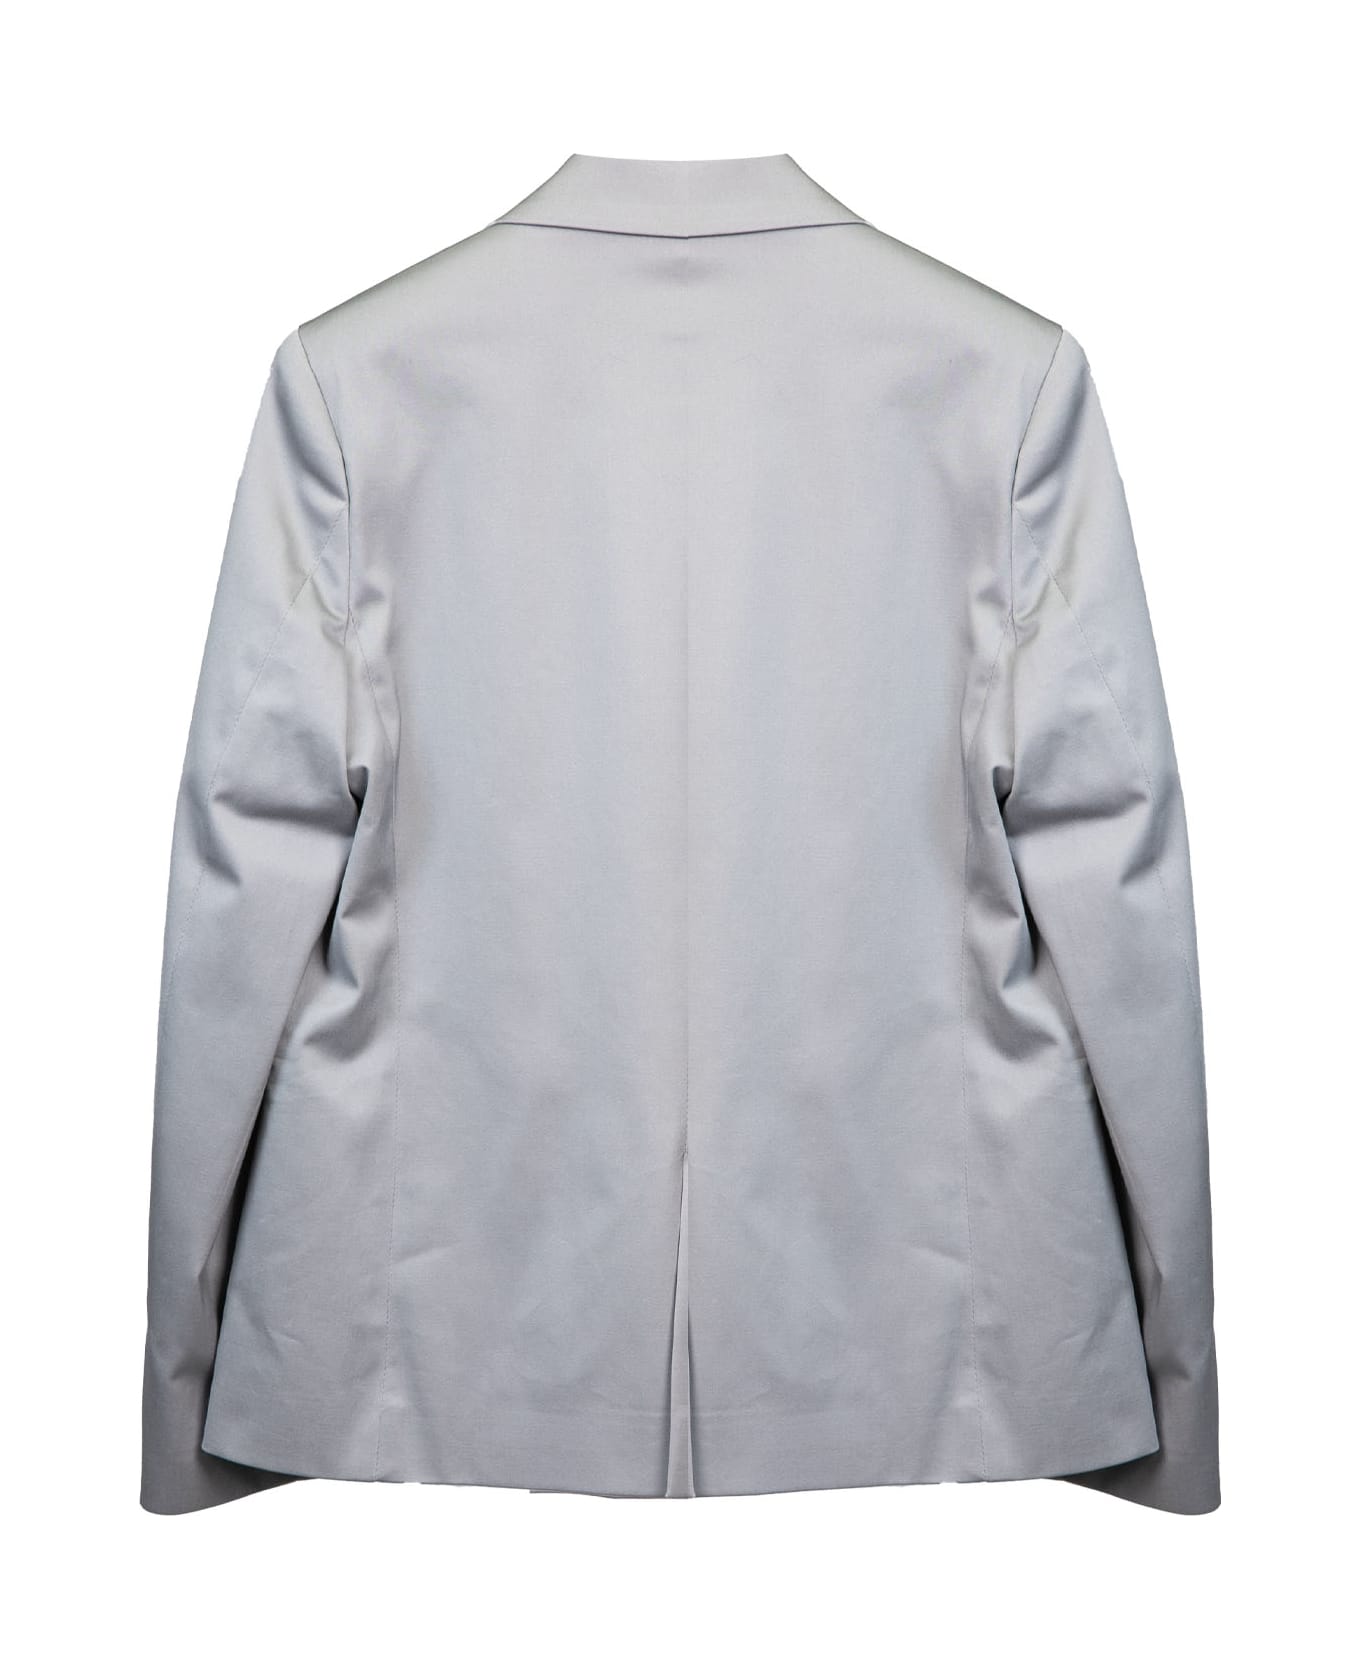 Paolo Pecora Cotton Jacket - Grey